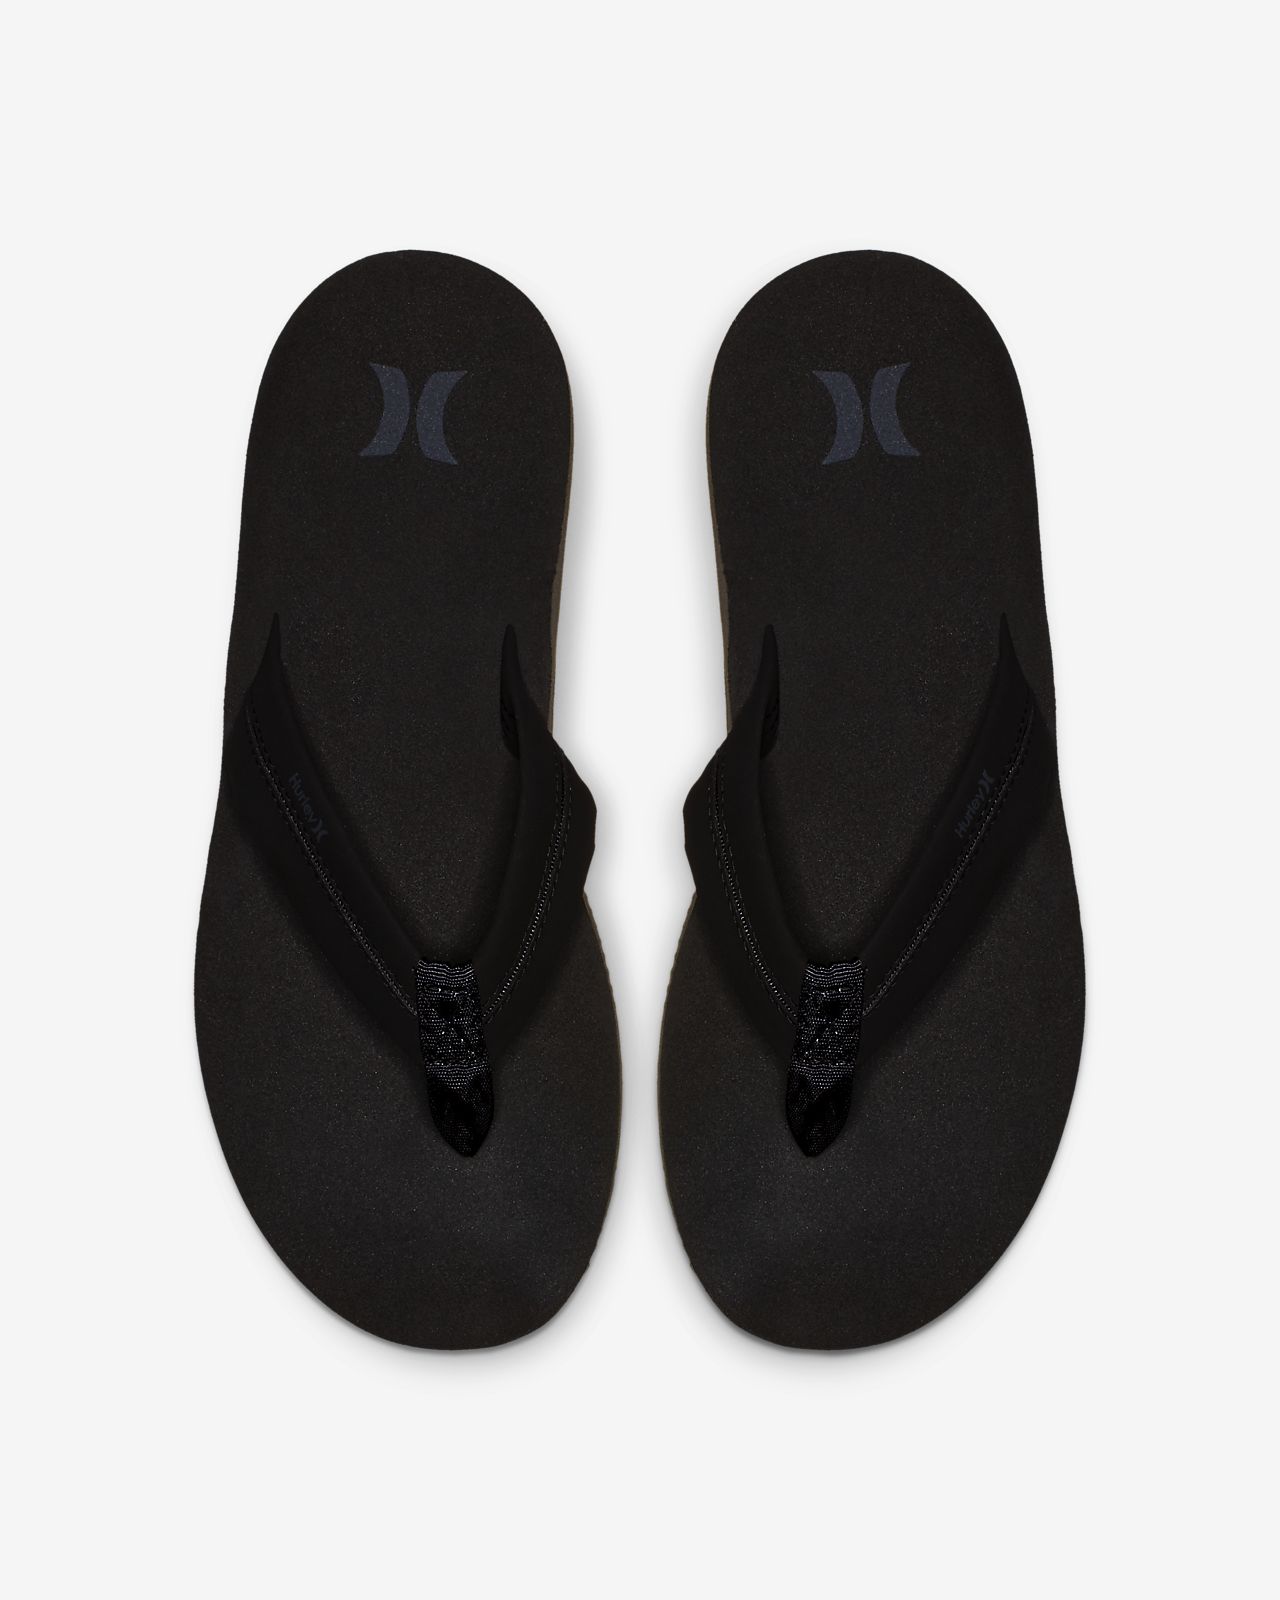 Hurley Lunar Men's Sandals. Nike NO